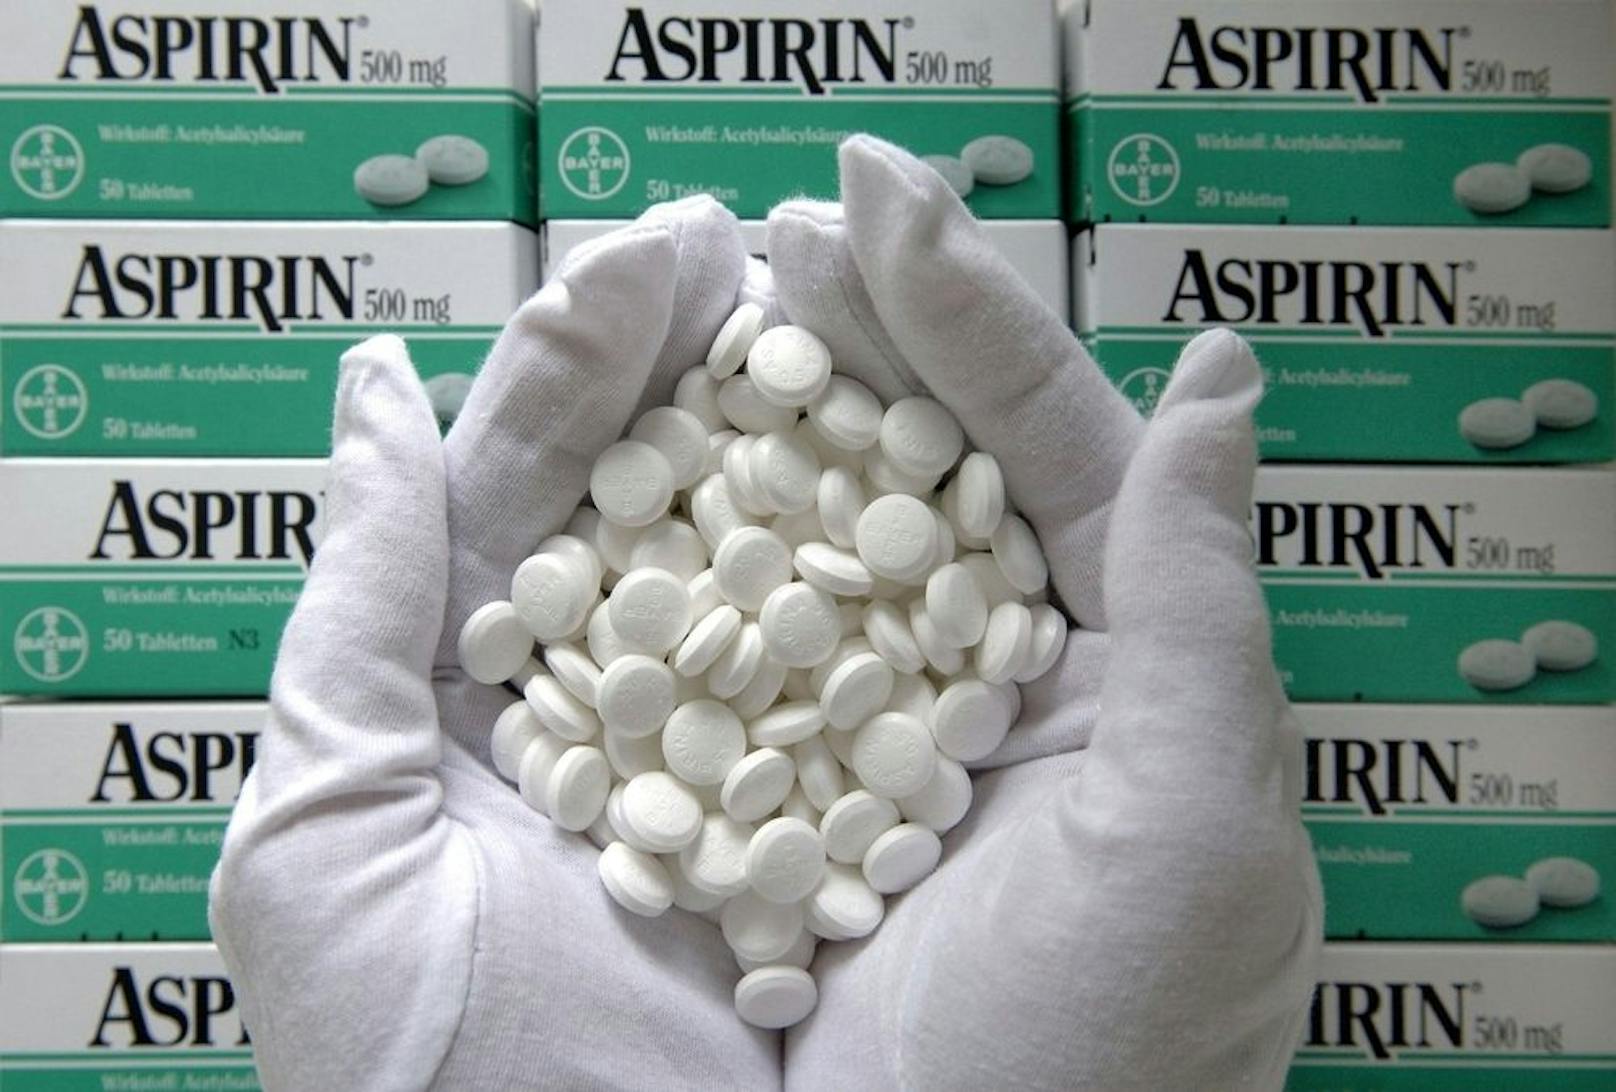 Die regelmäßige Einnahme von Aspirin erhöht das Risiko von inneren Blutungen, insbesondere im Gehirn oder im Darm.